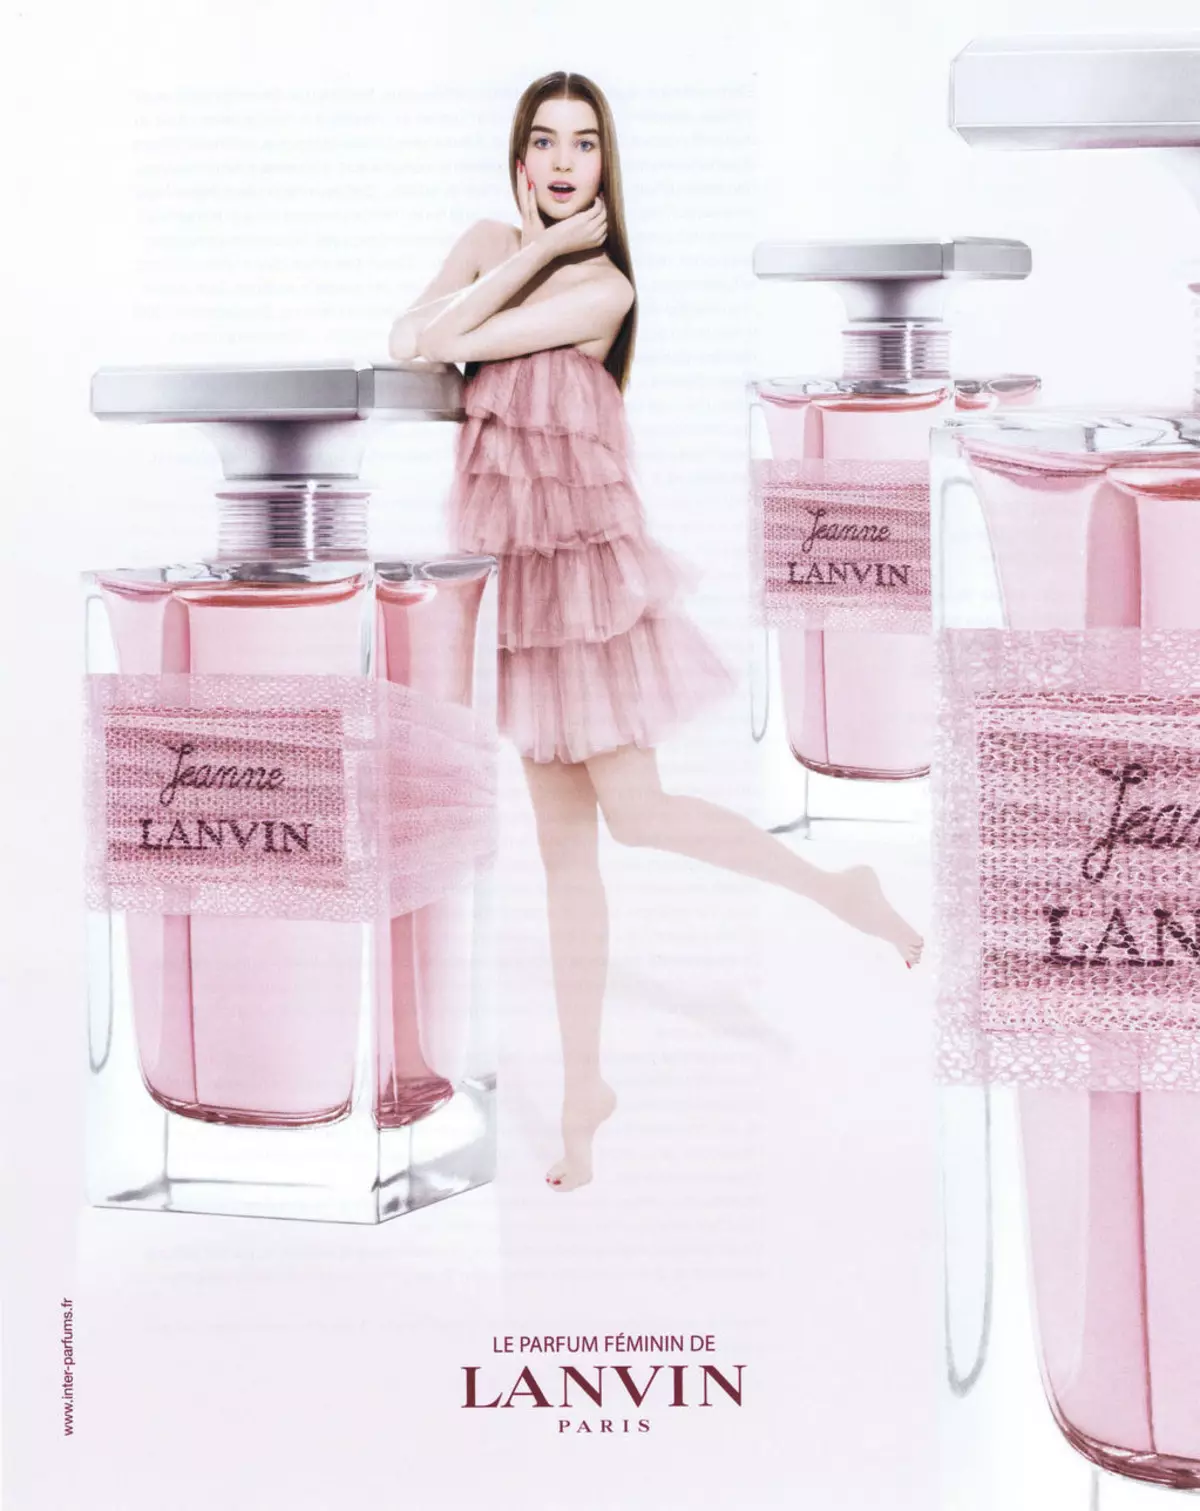 Lanvin parfémy (50 fotek): ženský parfém eclat d'arpege, moderní princezna eau sensuelle a dívka v capri, jeanne skandál a další příchutě 25158_13